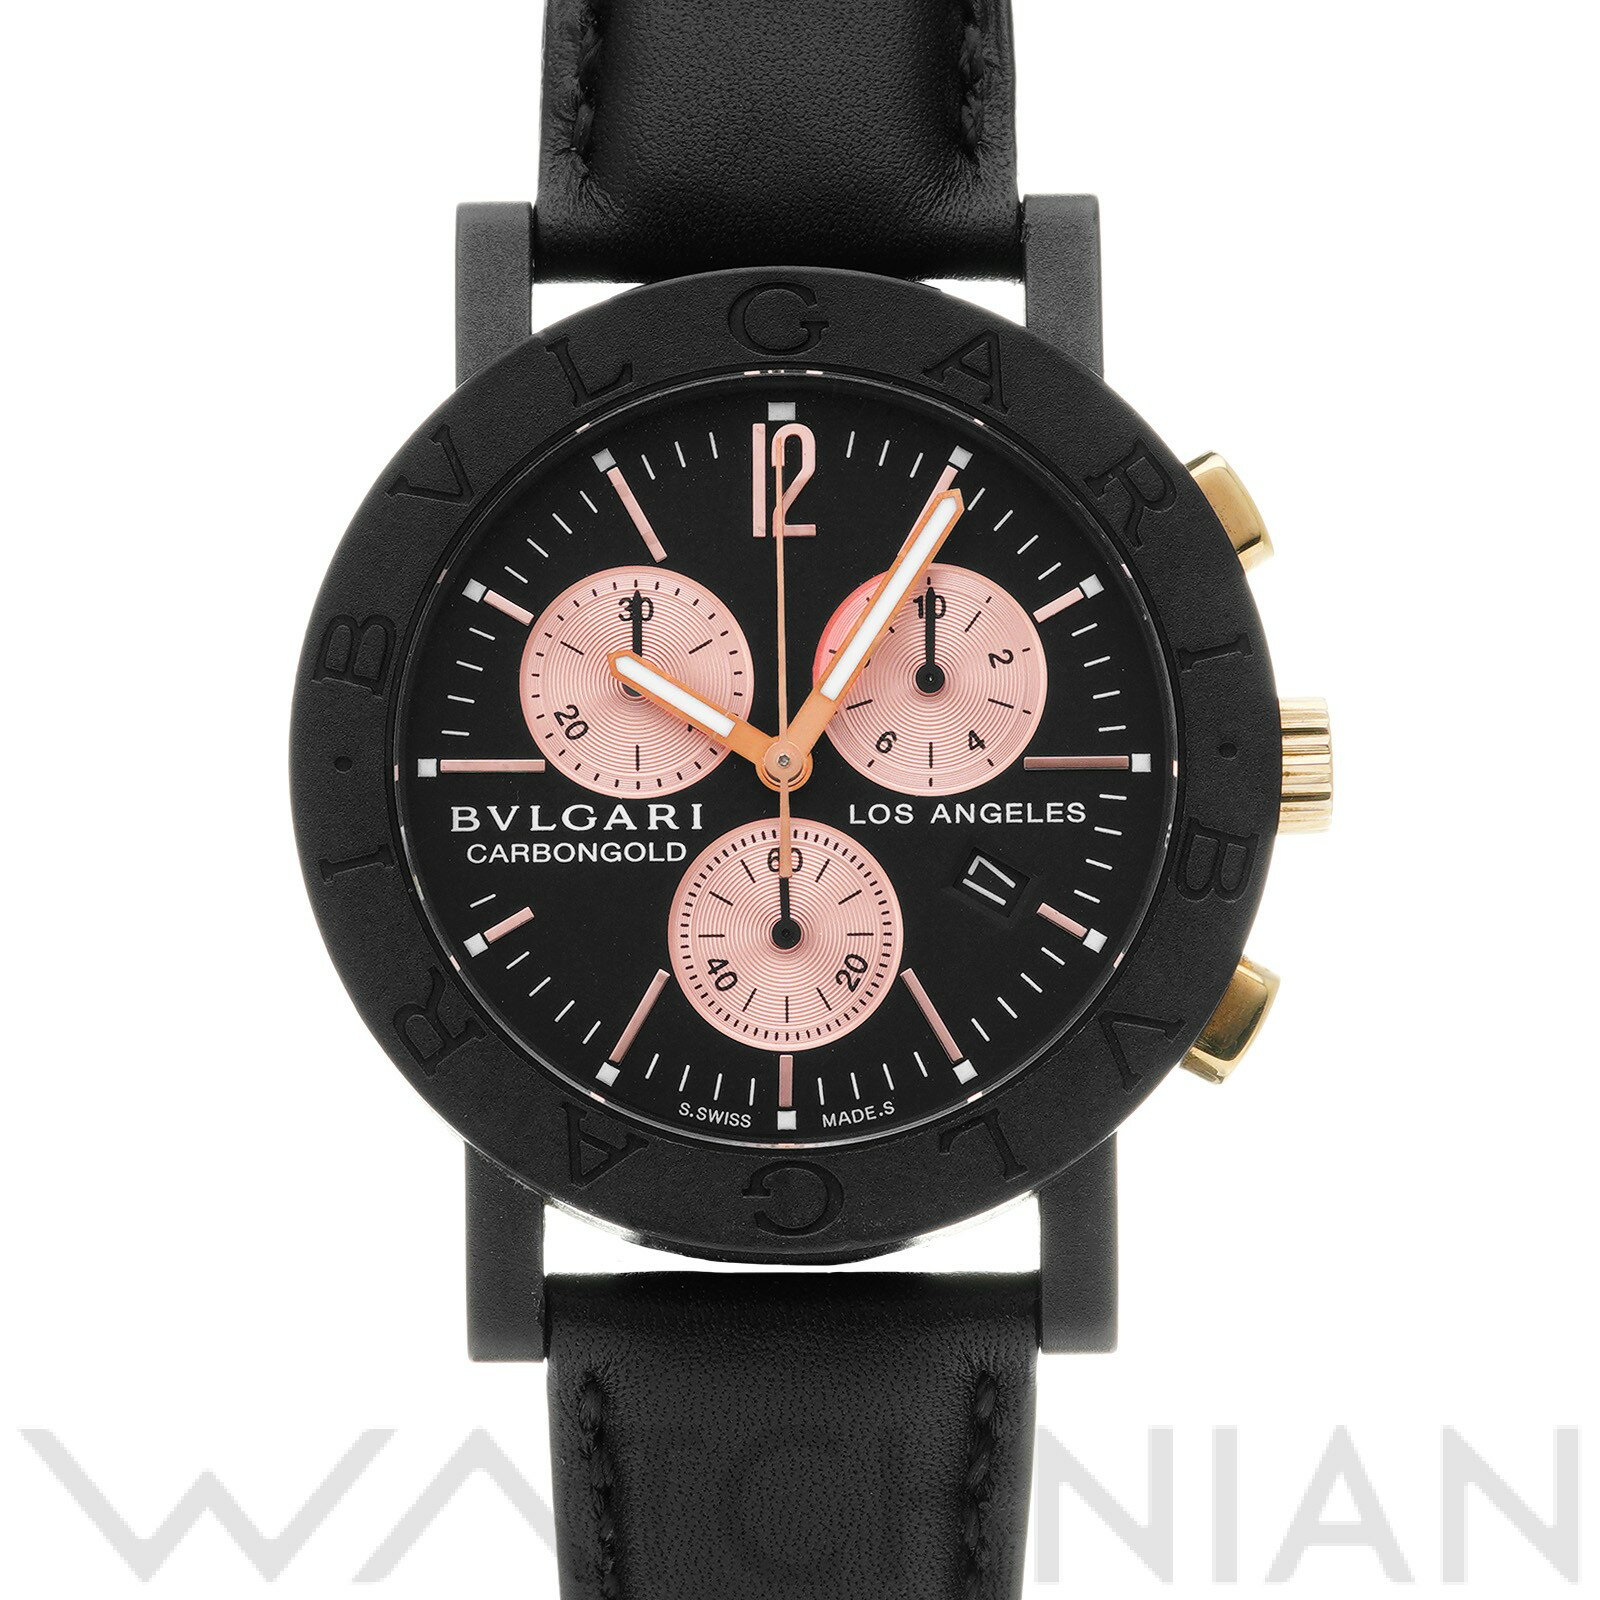 【中古】 ブルガリ BVLGARI ブルガリブルガリ カーボンゴールド クロノグラフ ロサンゼルス BBP38CGLDCH/8 ブラック/ピンク メンズ 腕時計